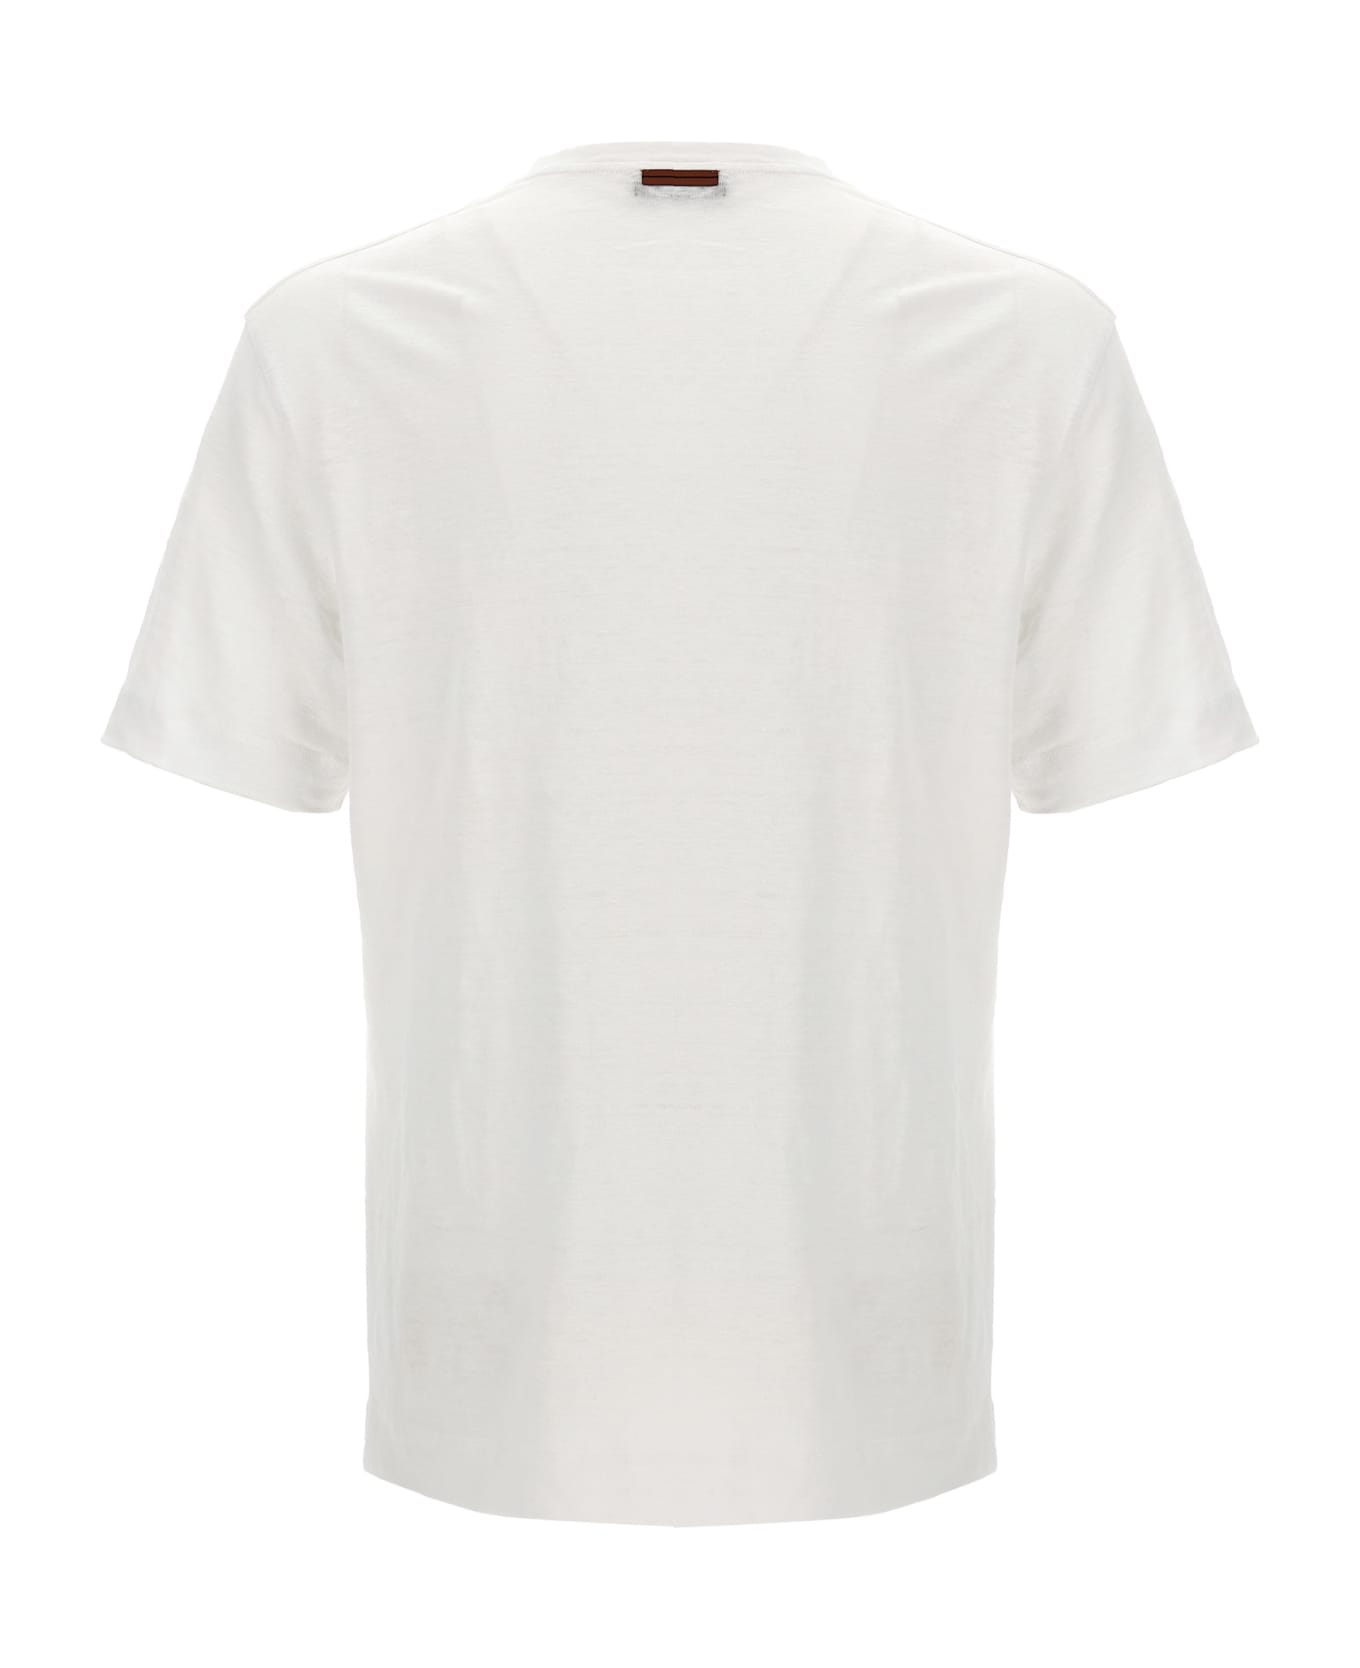 Zegna Linen T-shirt - Cream